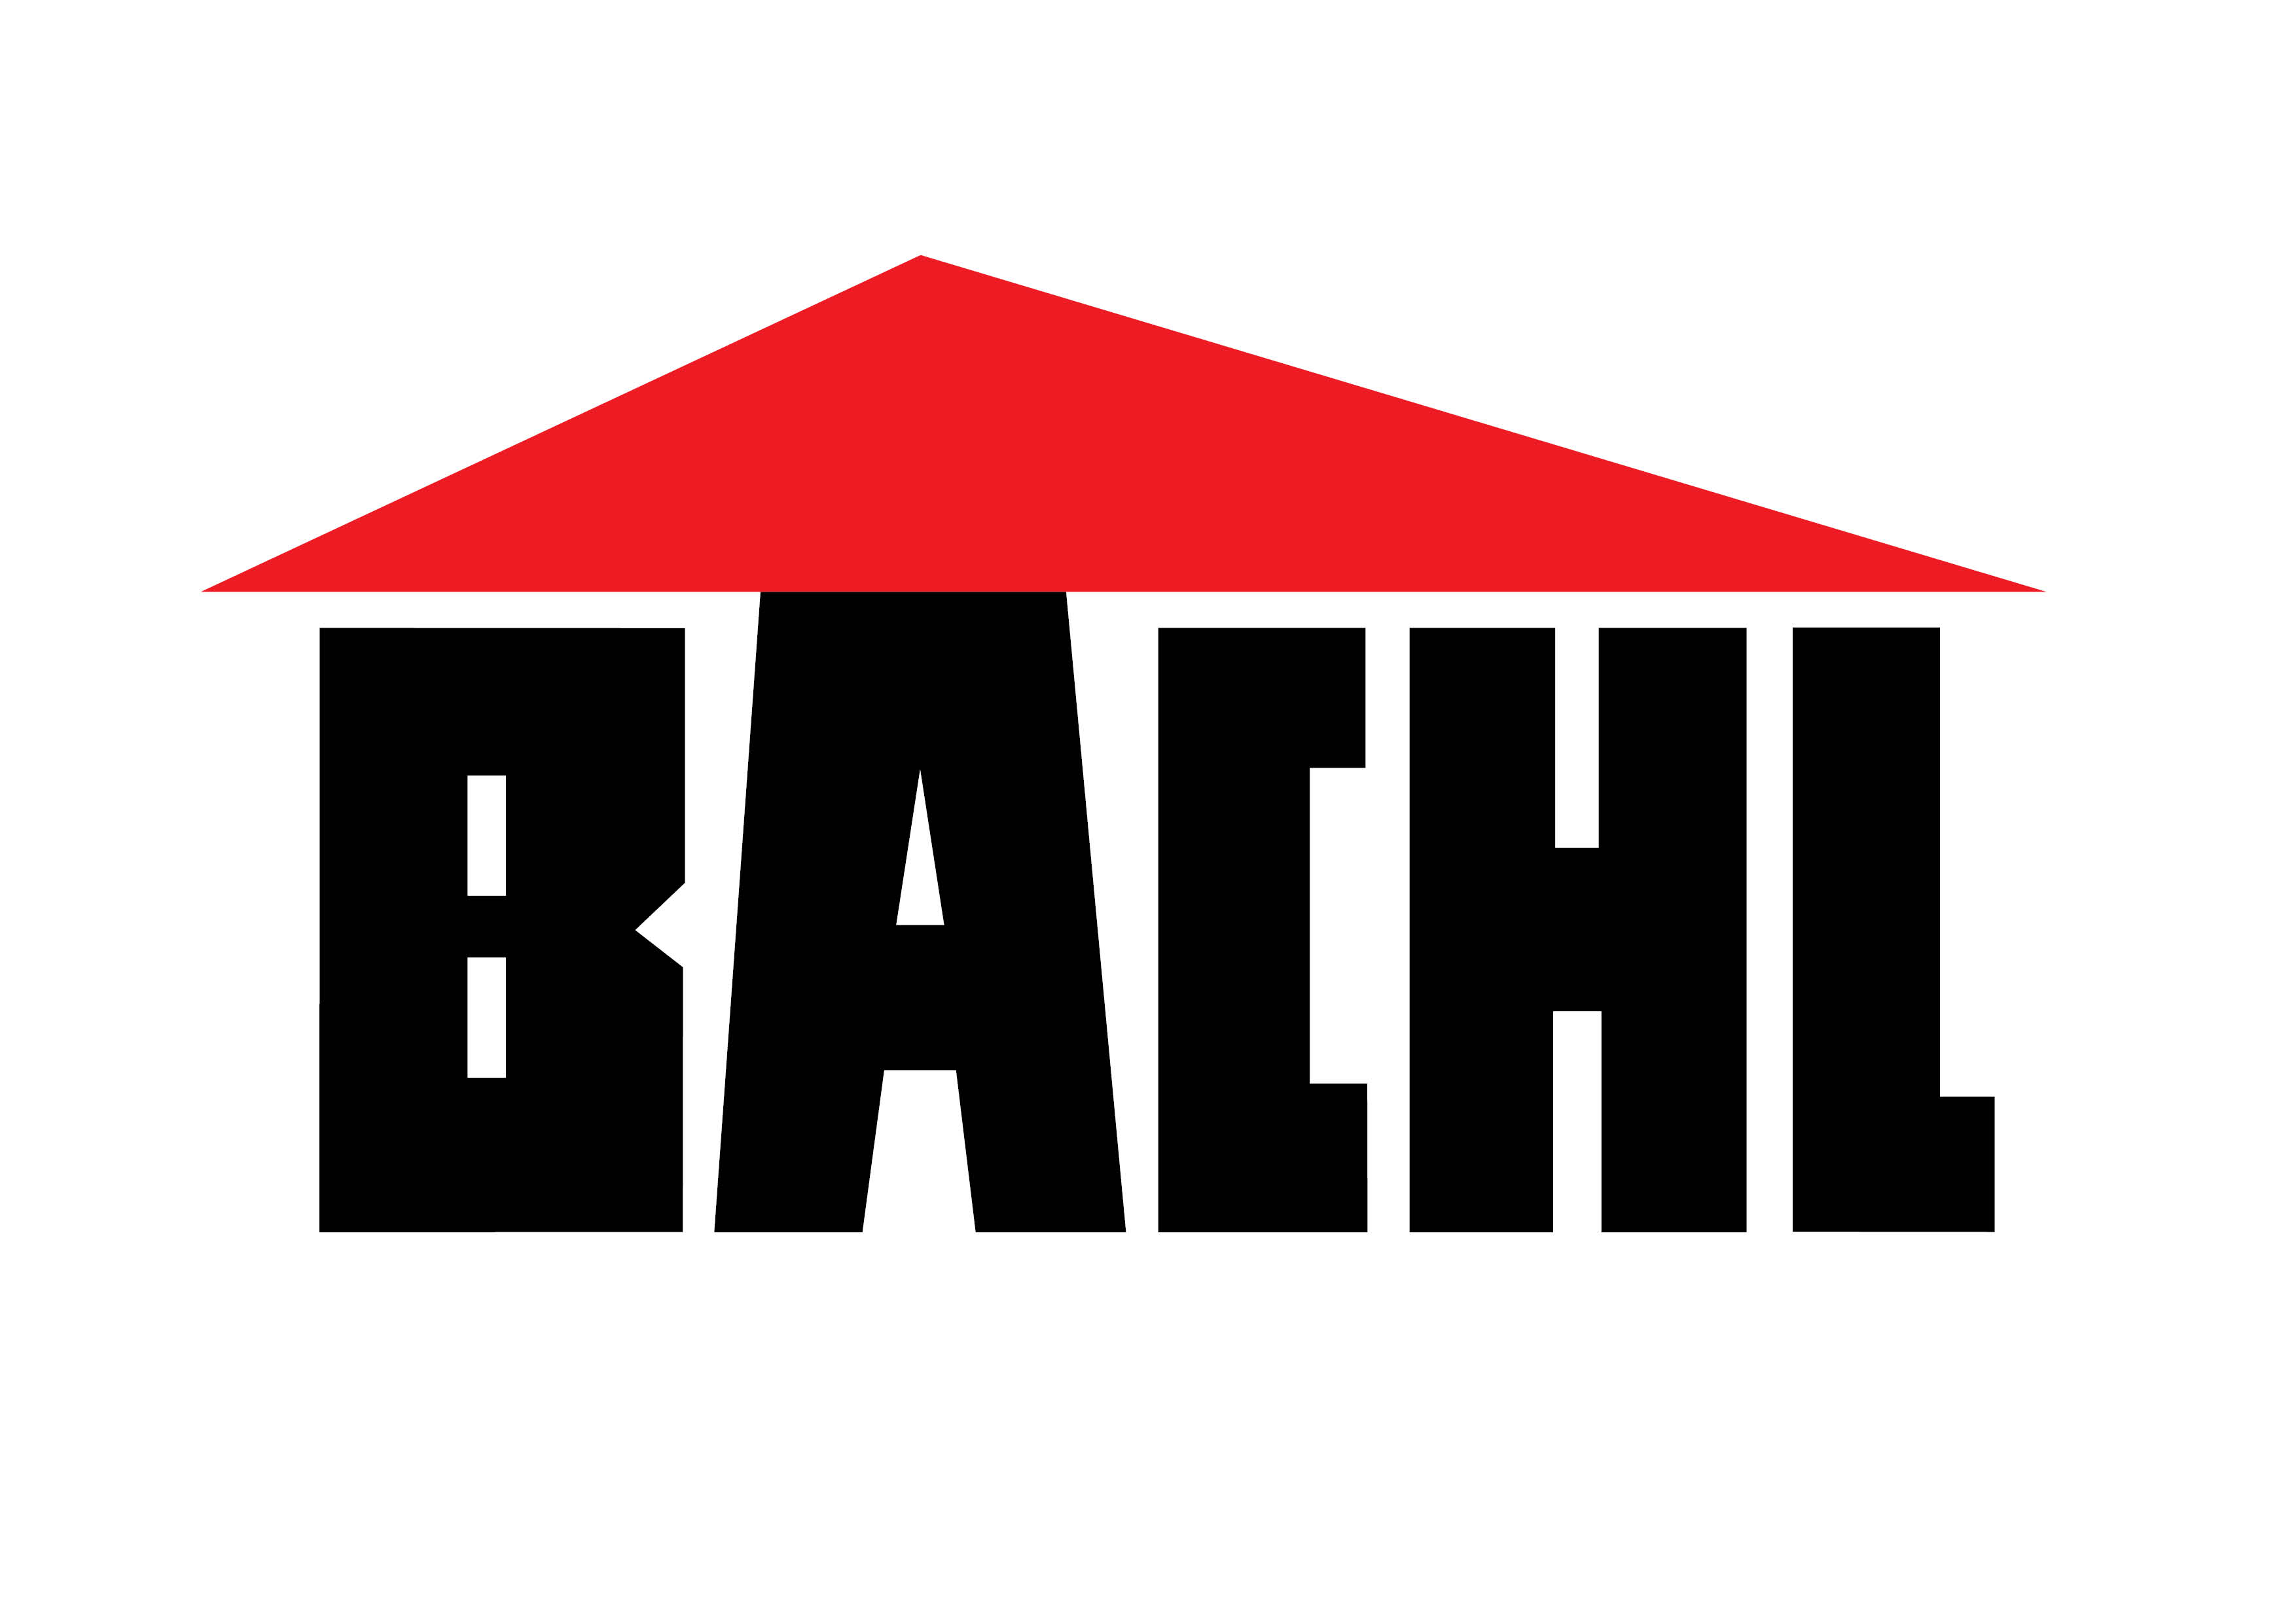 Logo Karl Bachl GmbH & Co KG